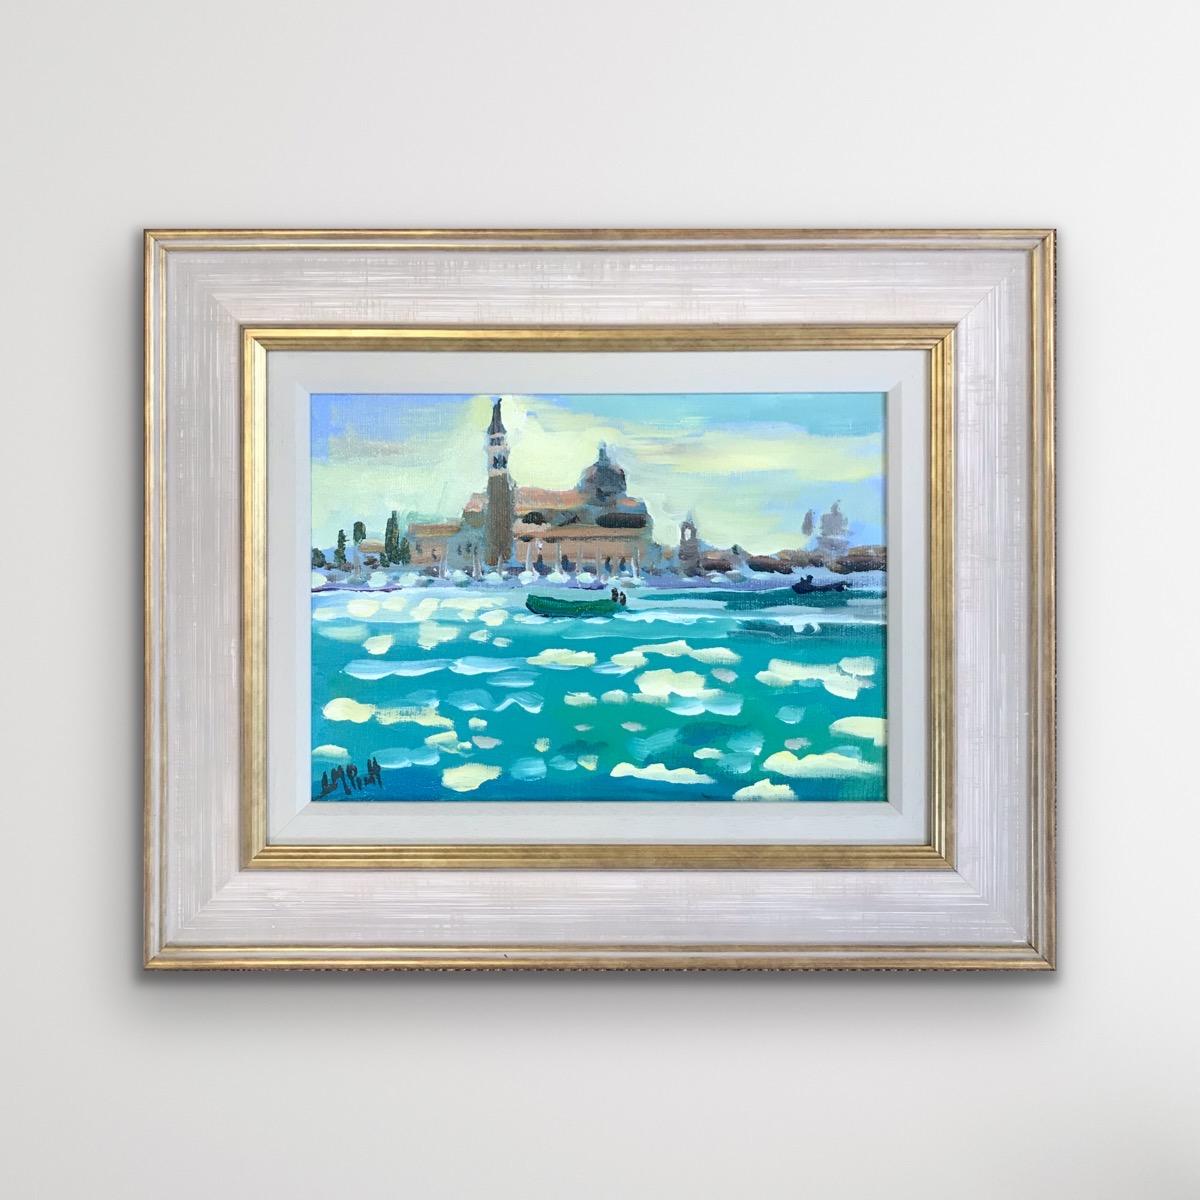 Gondolas At St Mark's, Venise, peinture de paysage urbain de style impressionniste vibrant - Impressionnisme Painting par Lucy Pratt